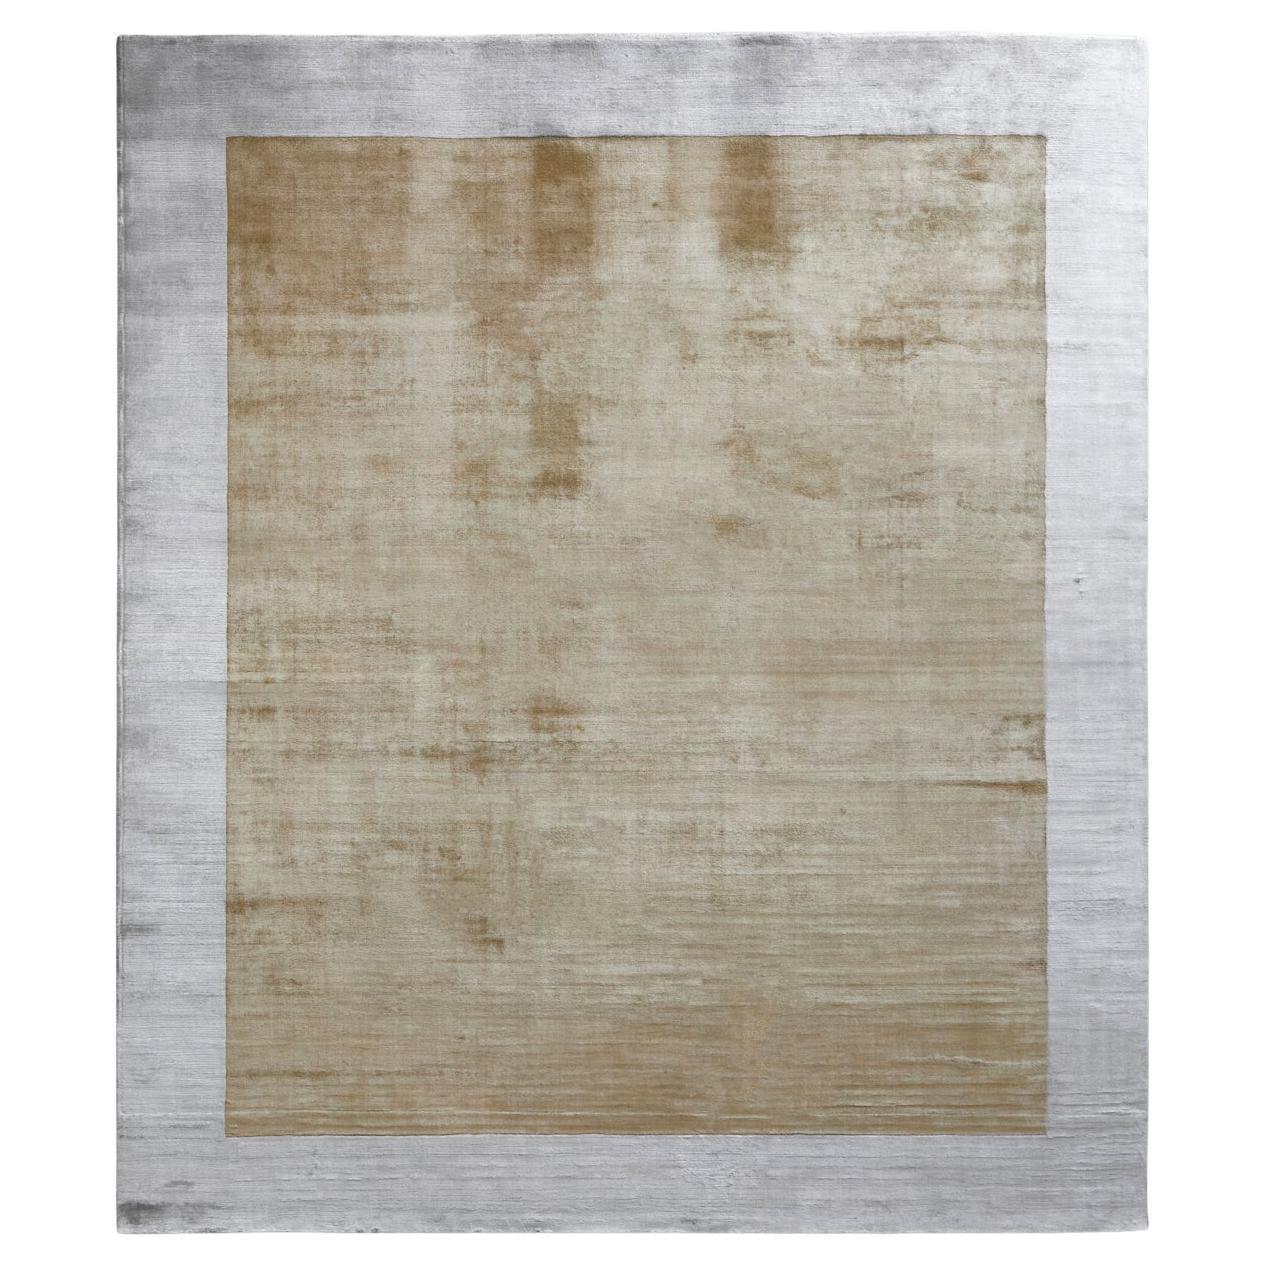 Glänzender, luxuriöser hellgelber Ecru-Teppich von Deanna Comellini, 200x300 cm